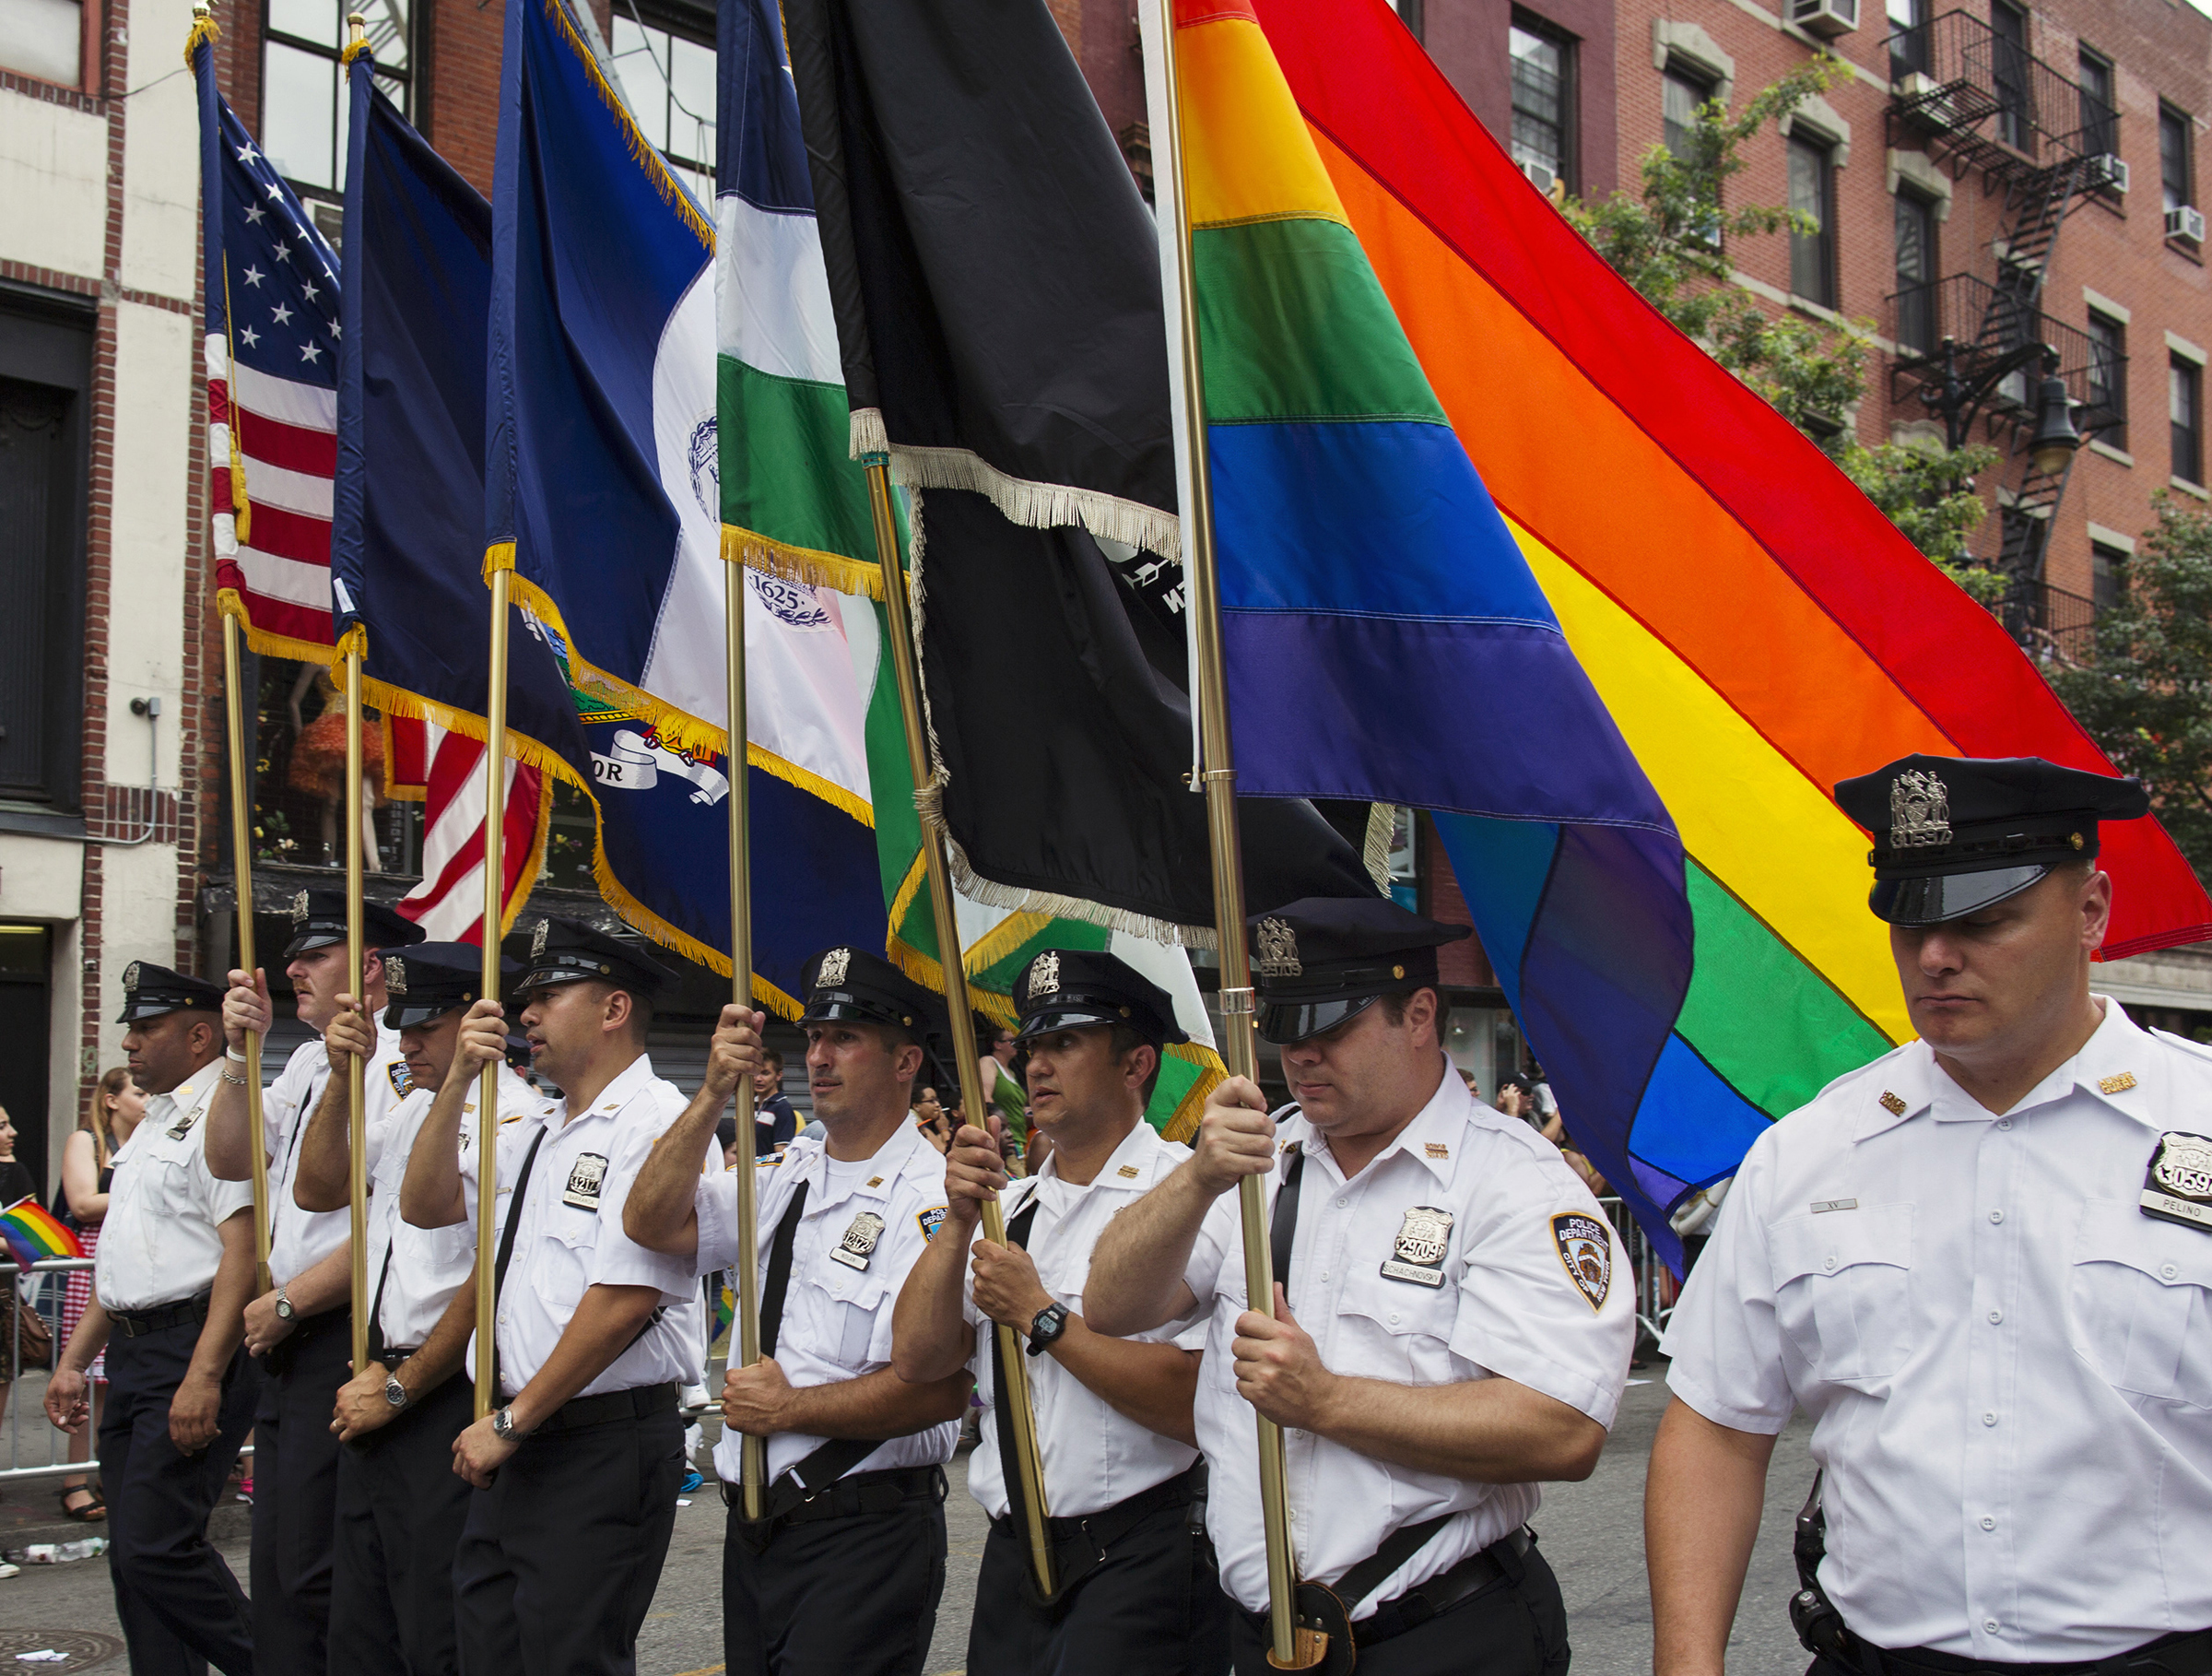 nyc gay pride june 30th security